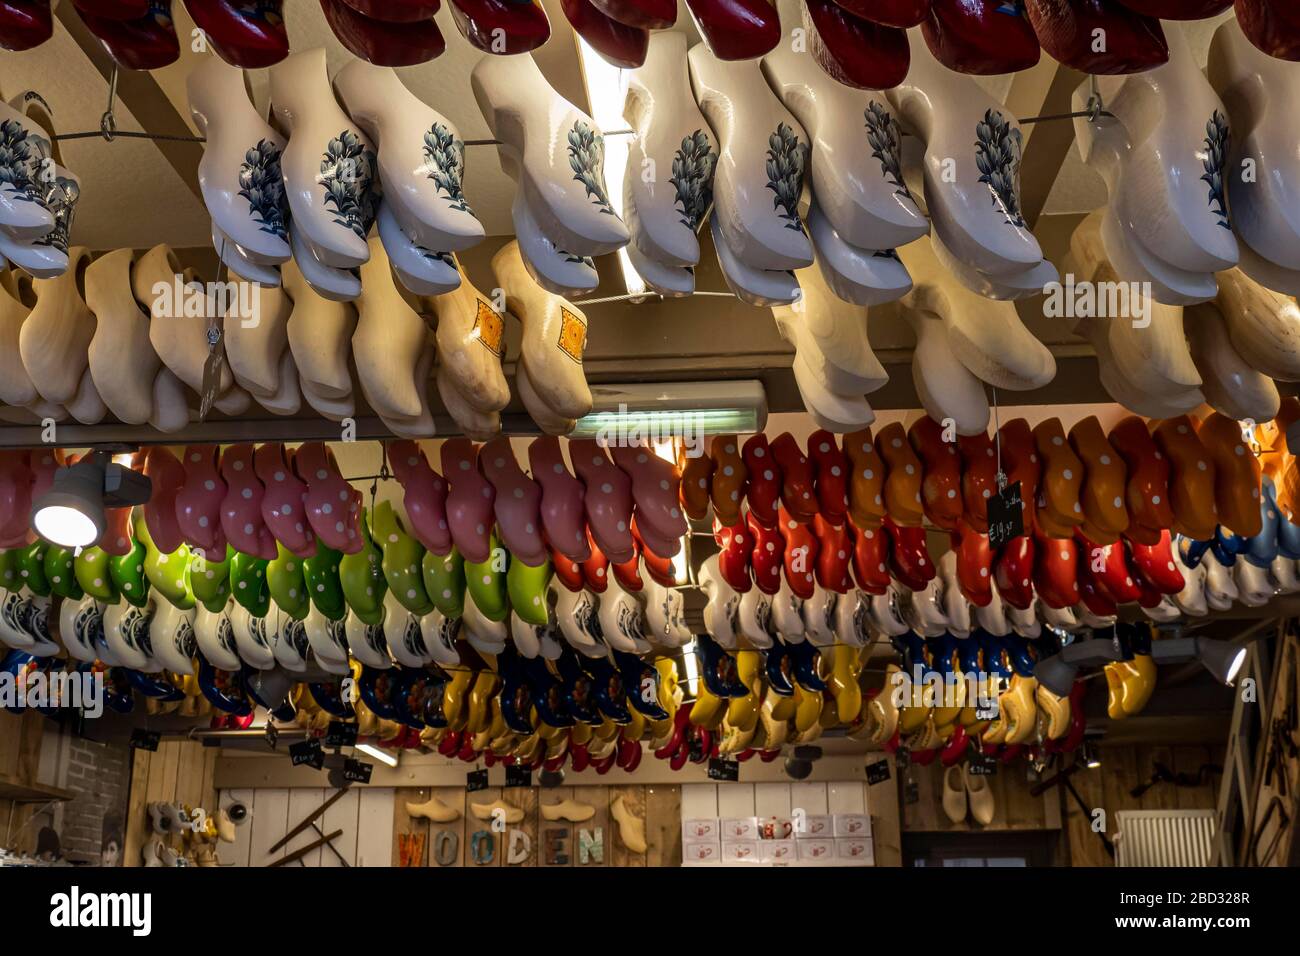 Tradizionalmente, zoccoli olandesi colorati appesi al soffitto in un laboratorio di zoccoli, Volendam, Olanda del Nord, Olanda Foto Stock